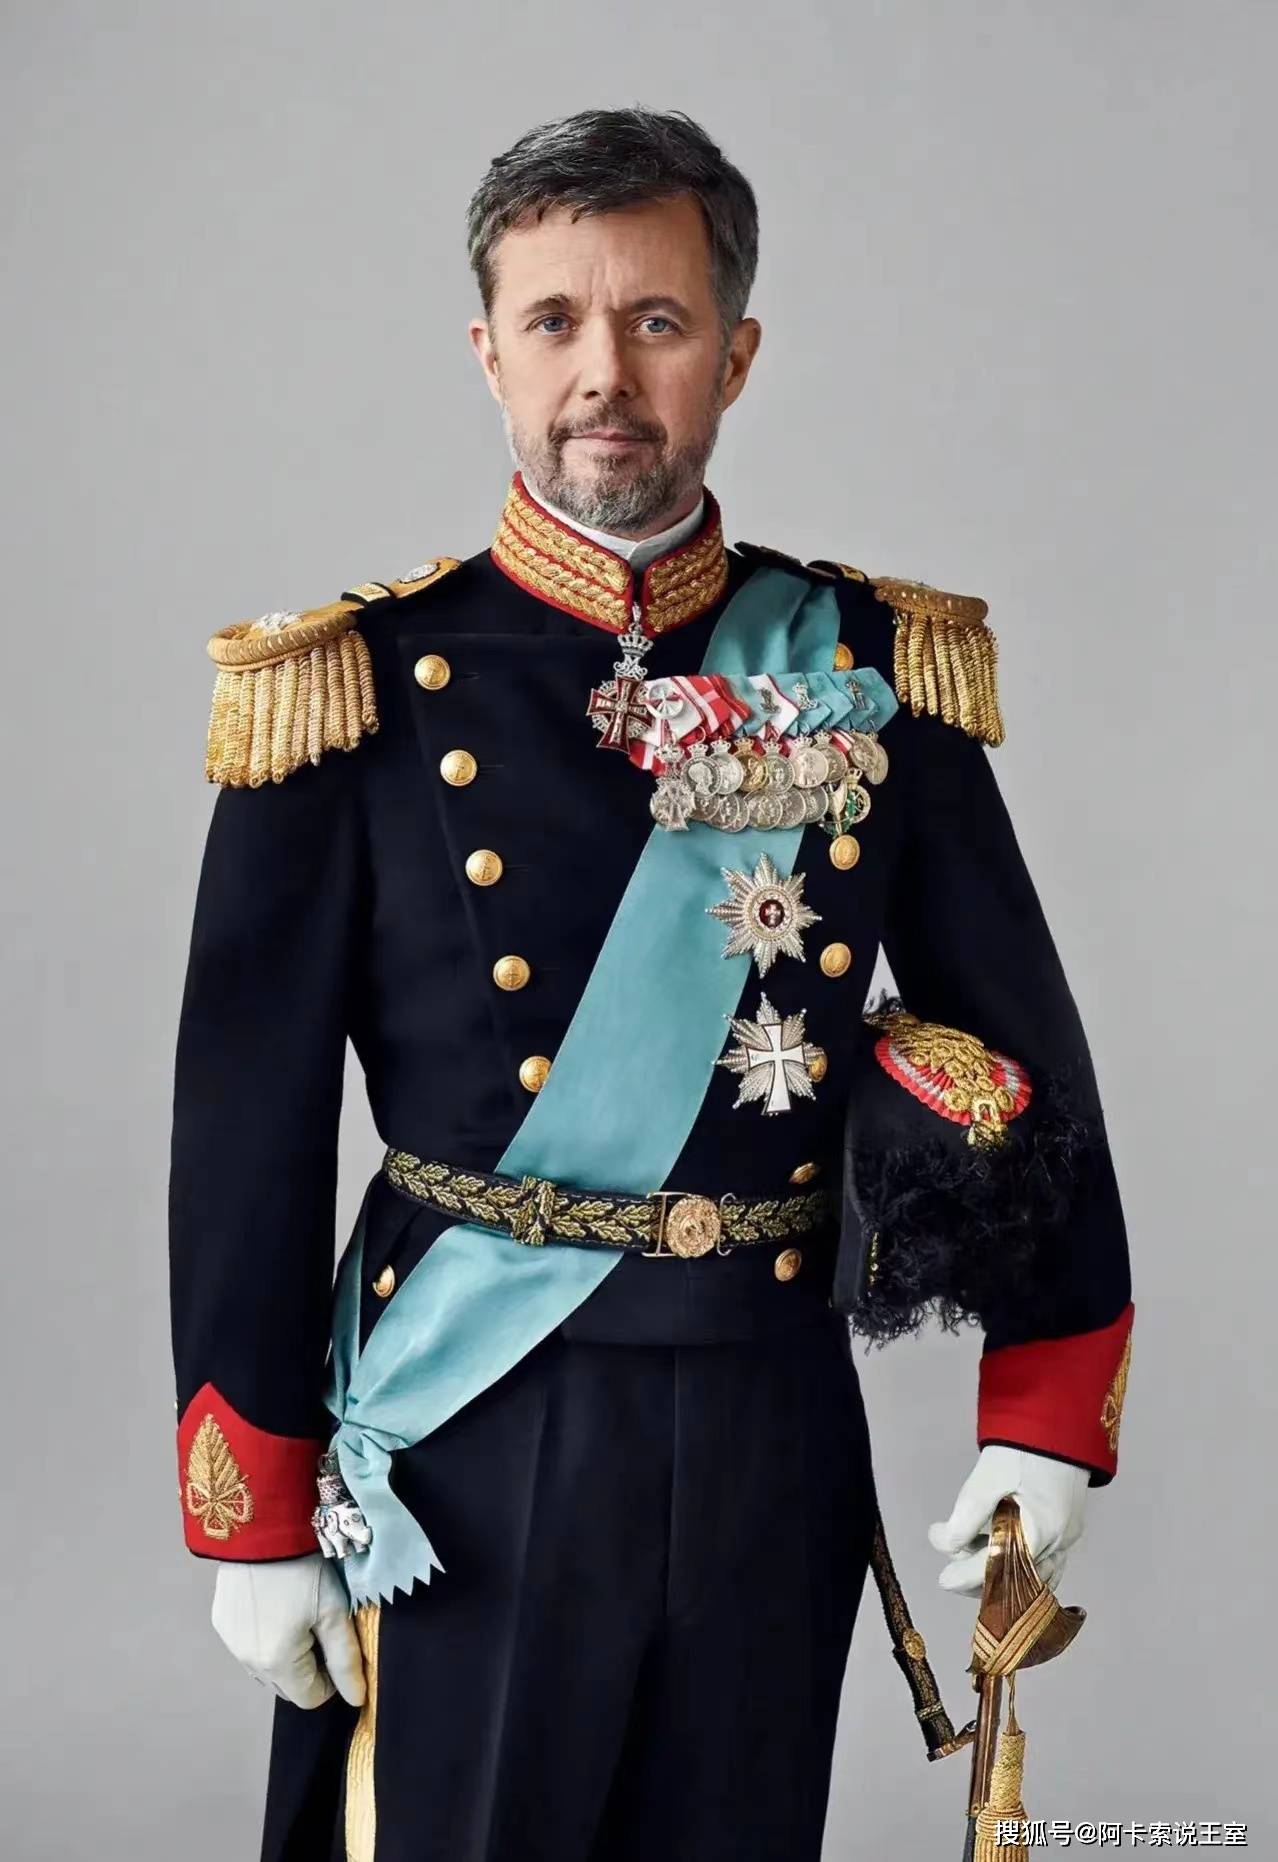 丹麦国王腓特烈十世登基,为王室成员颁发大象勋章,王后和王储获此殊荣